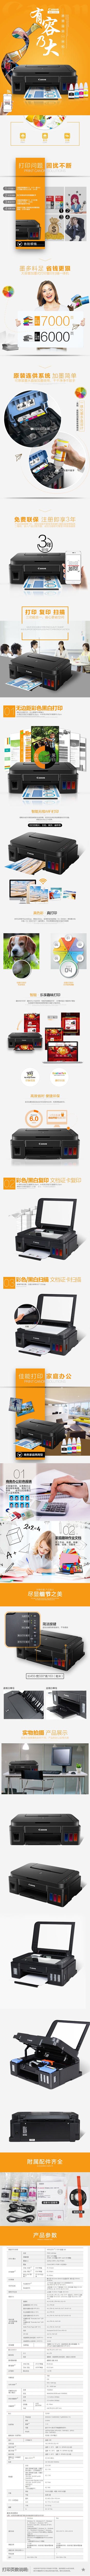 淘宝美工格子3c数码打印机详情设计高品质作品